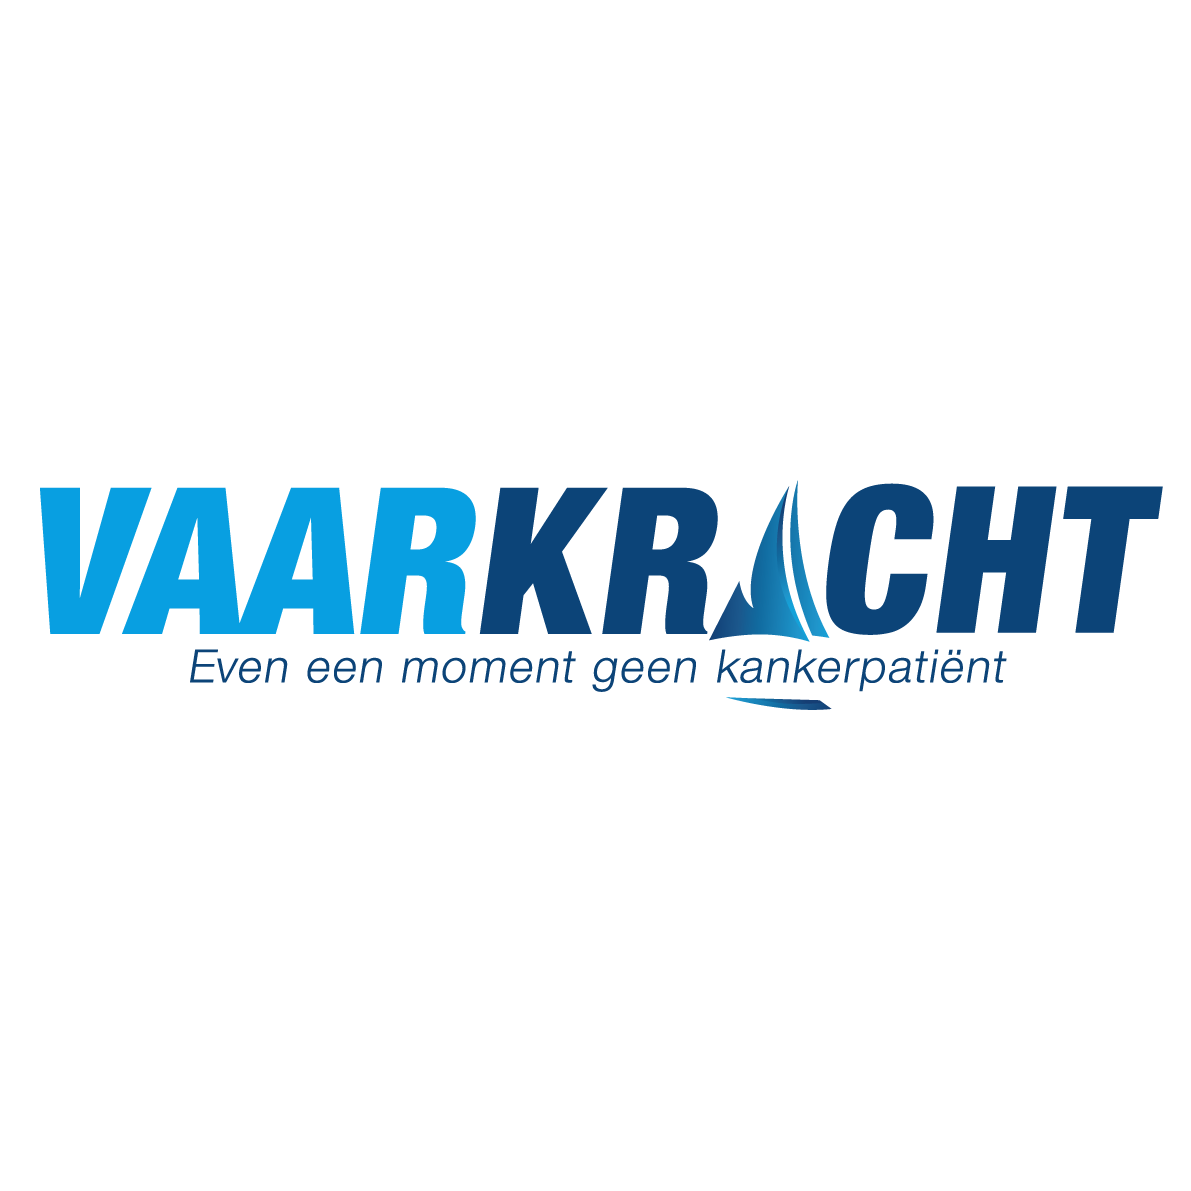 De officiële Twitter pagina van VaarKracht. Voorheen Nautischfonds.